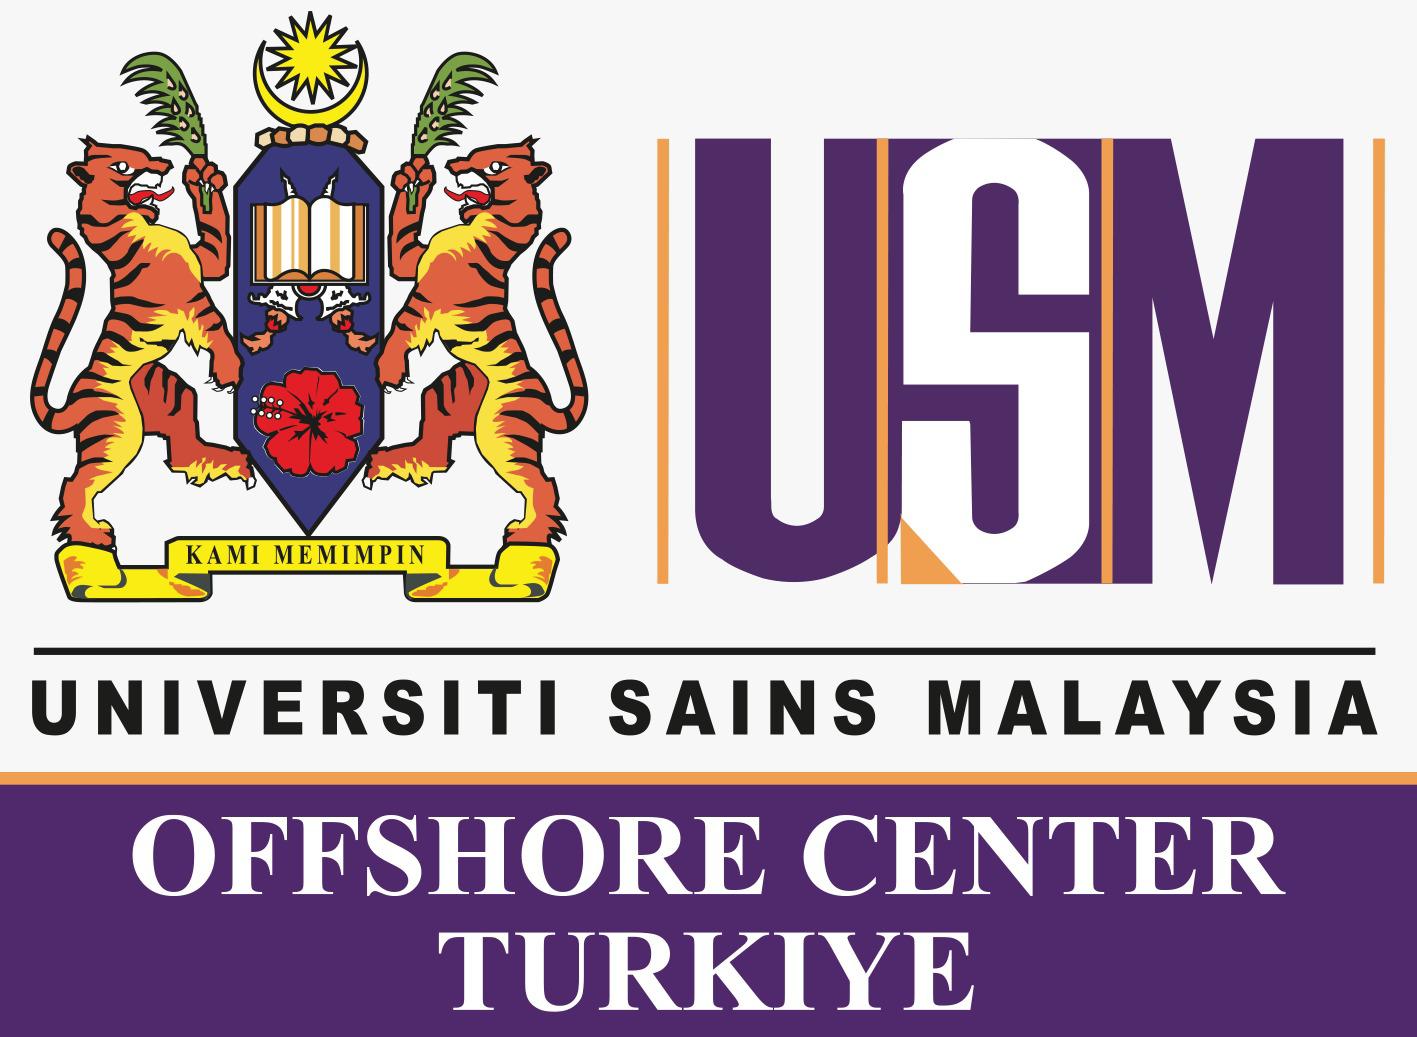 شركة المجموعة الأوروبية الدولية وكيل جامعة USM الماليزية